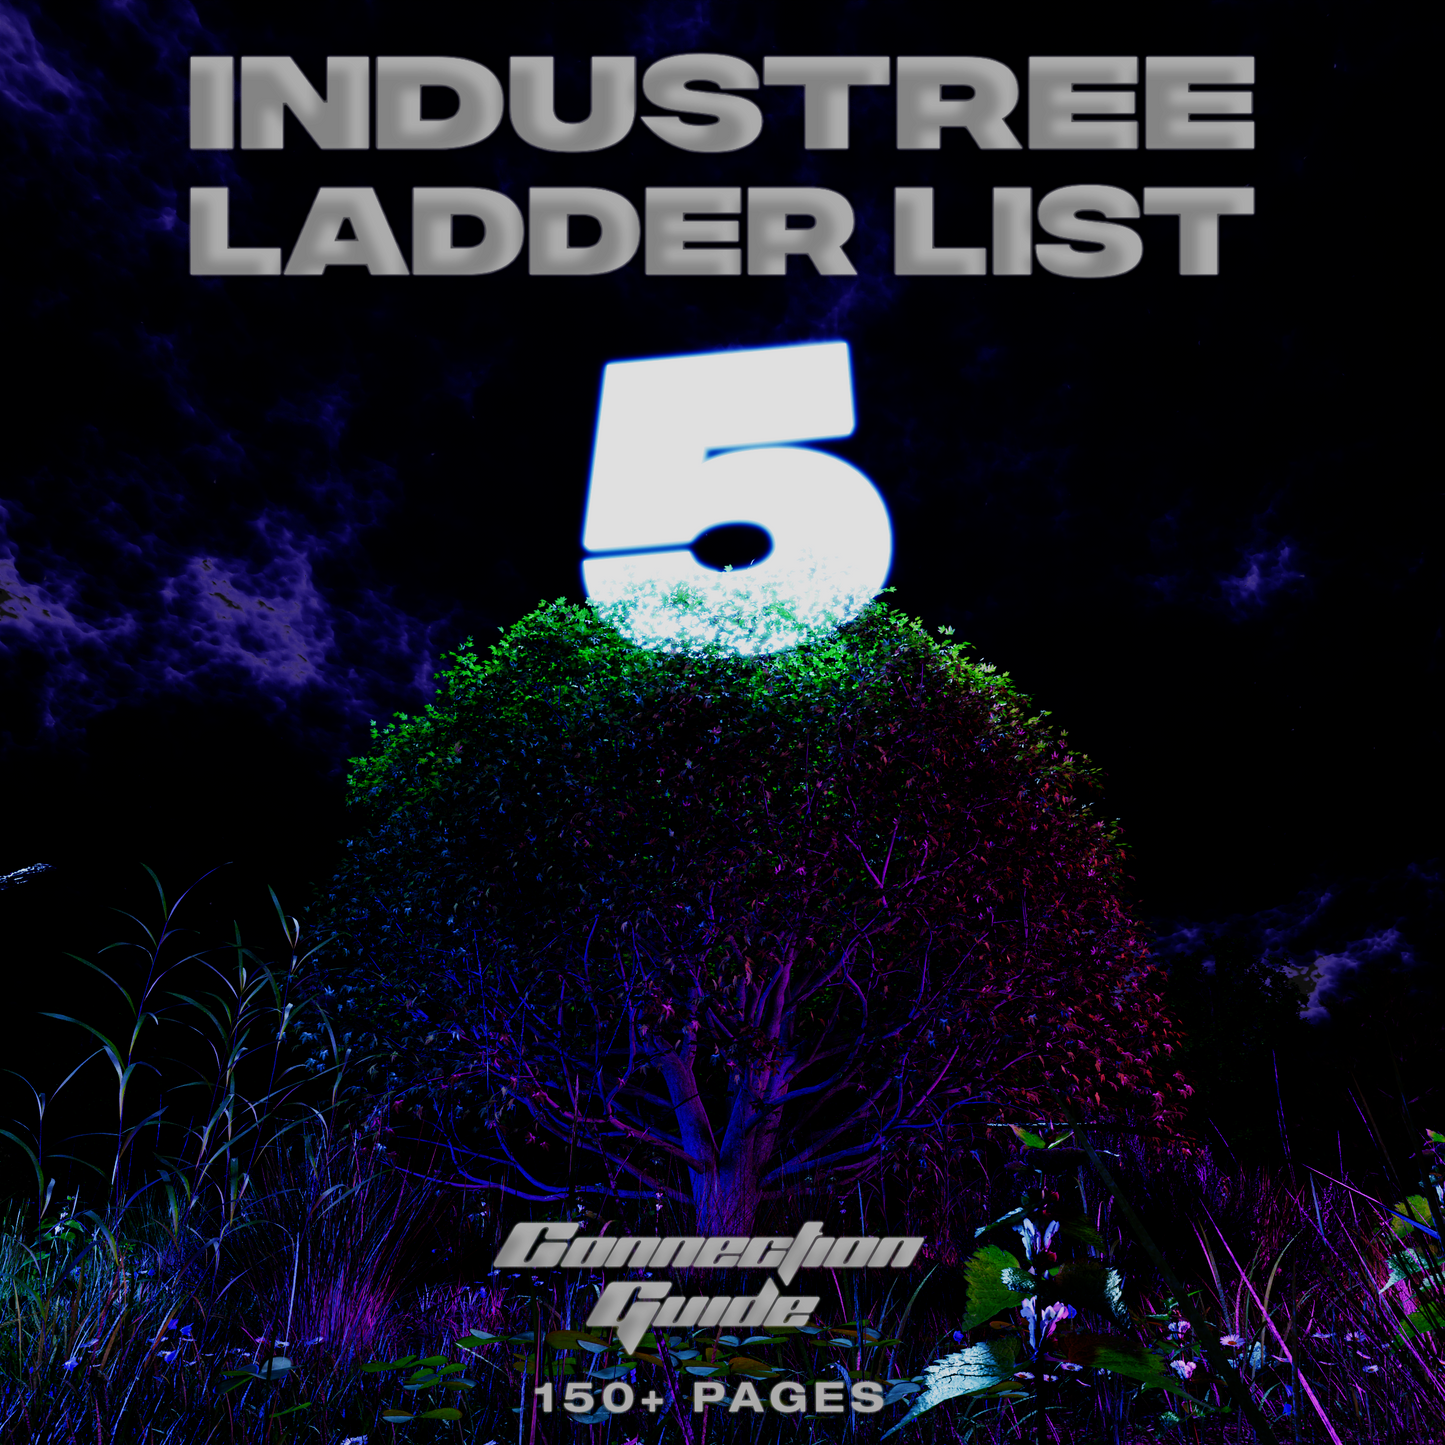 Ladder List 5 (INDUSTREE)